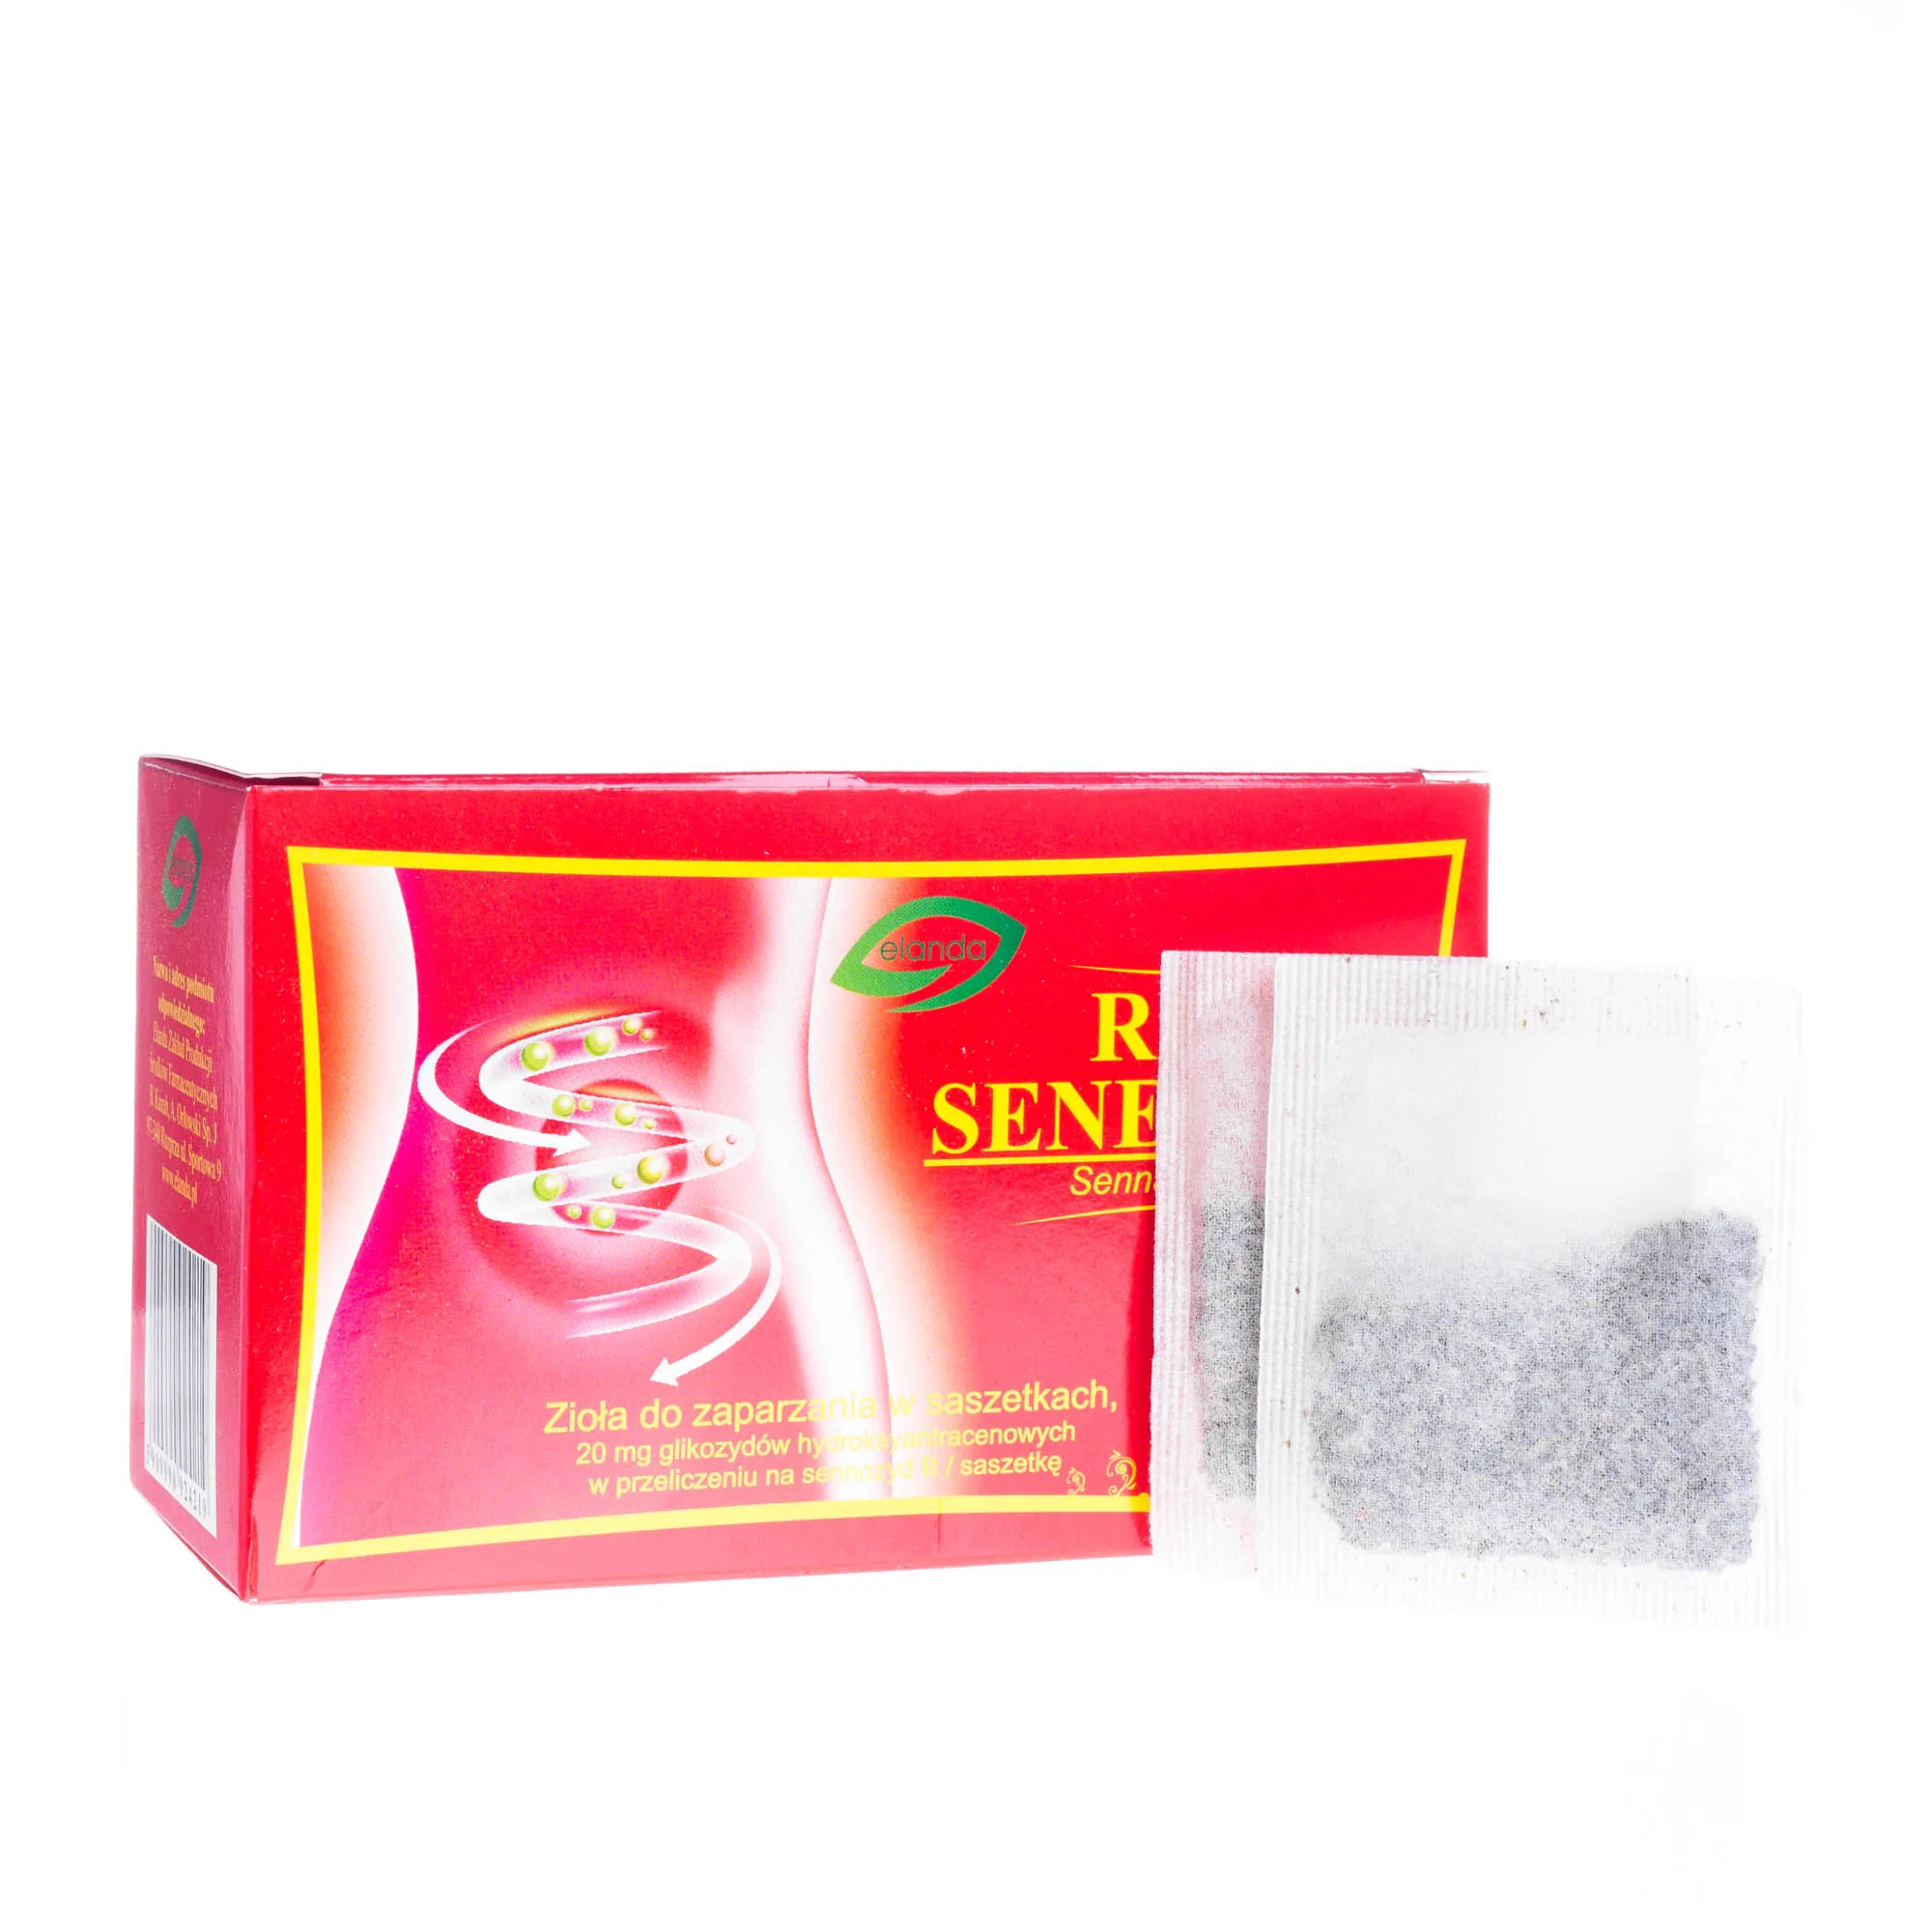 Red Senes Tea - zioła do zaparzania w saszetkach, 30 szt. x 2 g